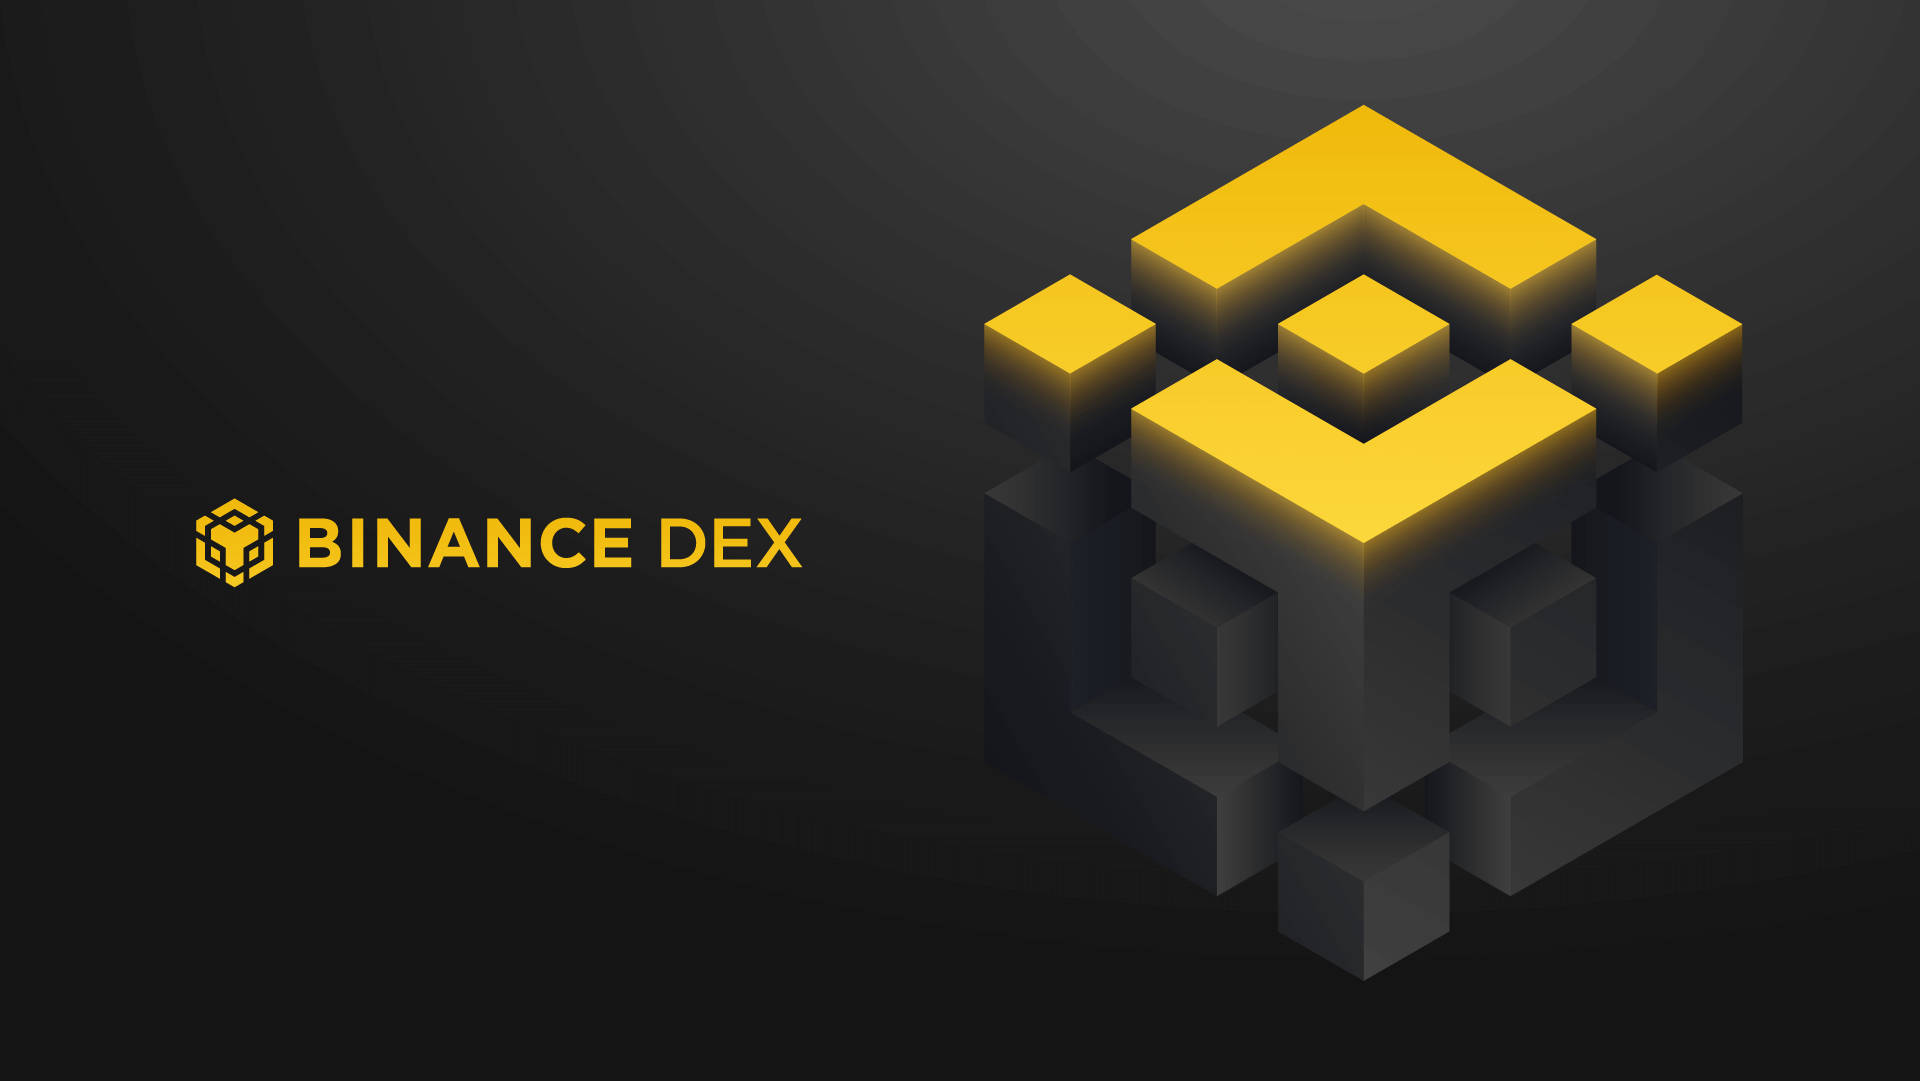 Binance Dex Cube Background